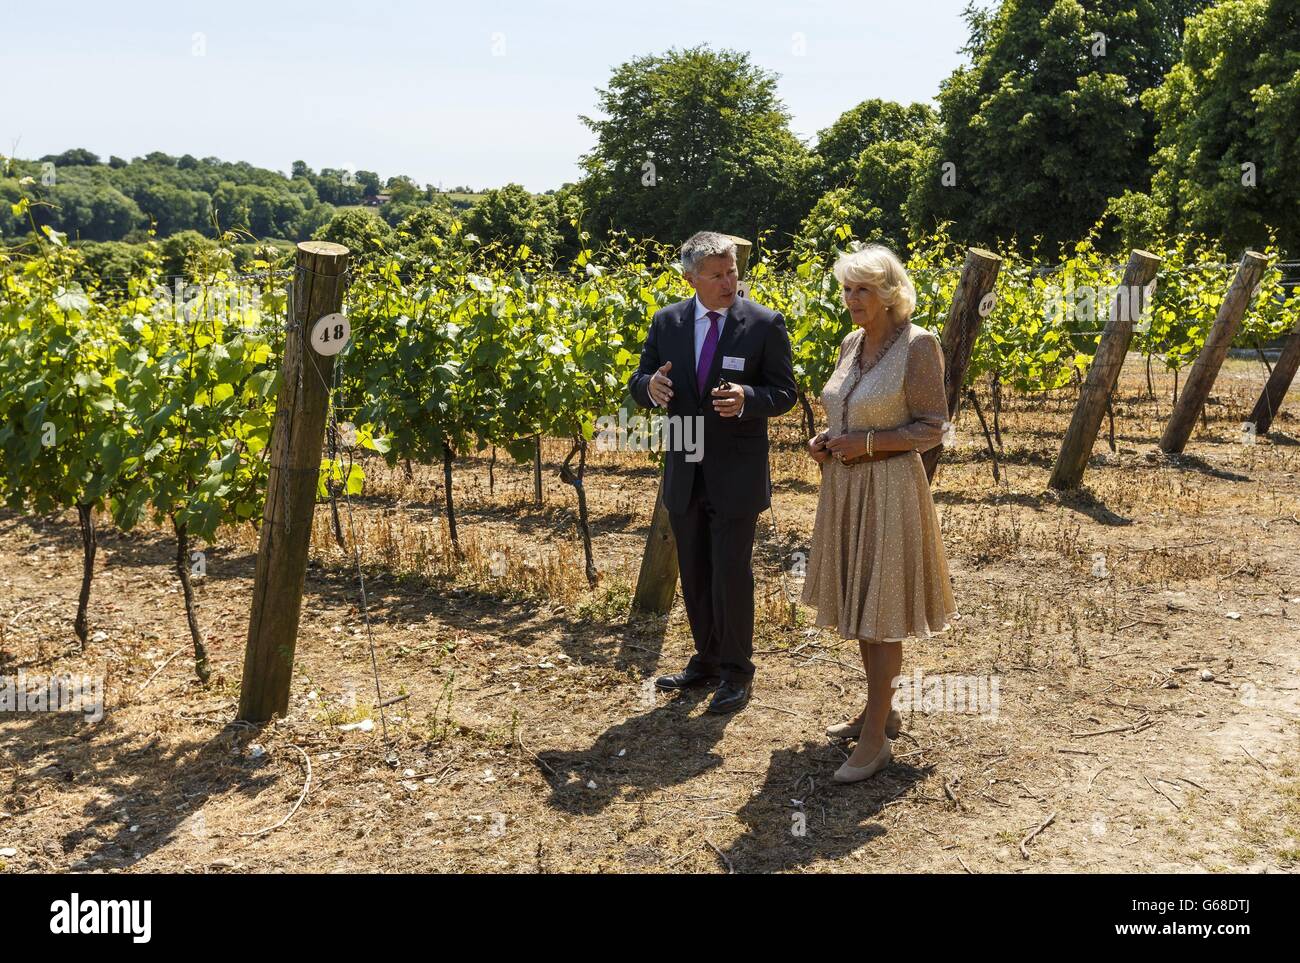 La Duchesse de Cornwall voit les vignes avec le directeur général Ian Kellett lors de sa visite à Hambledon Vineyard, dans le Hampshire, où elle a ouvert le nouveau domaine en sa qualité de présidente de la United Kingdom Vineyards Association. Banque D'Images